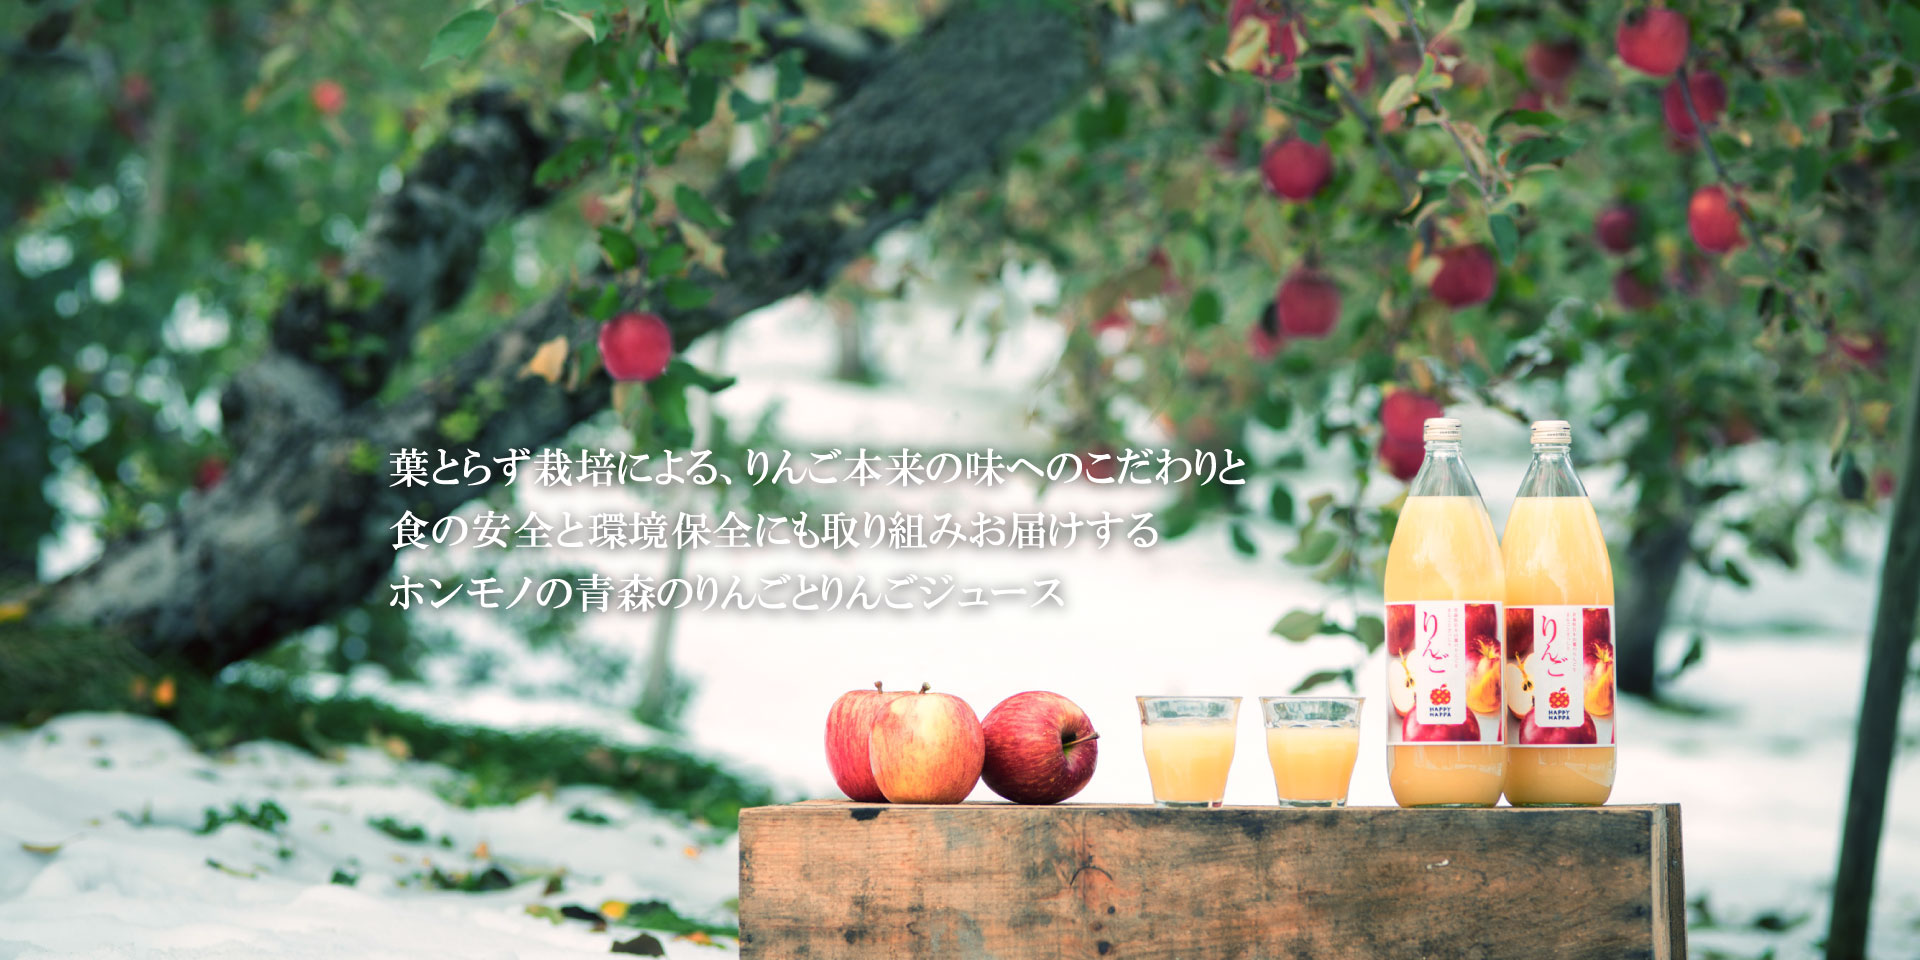 青森の葉とらずりんご HAPPYHAPPAメインイメージ1